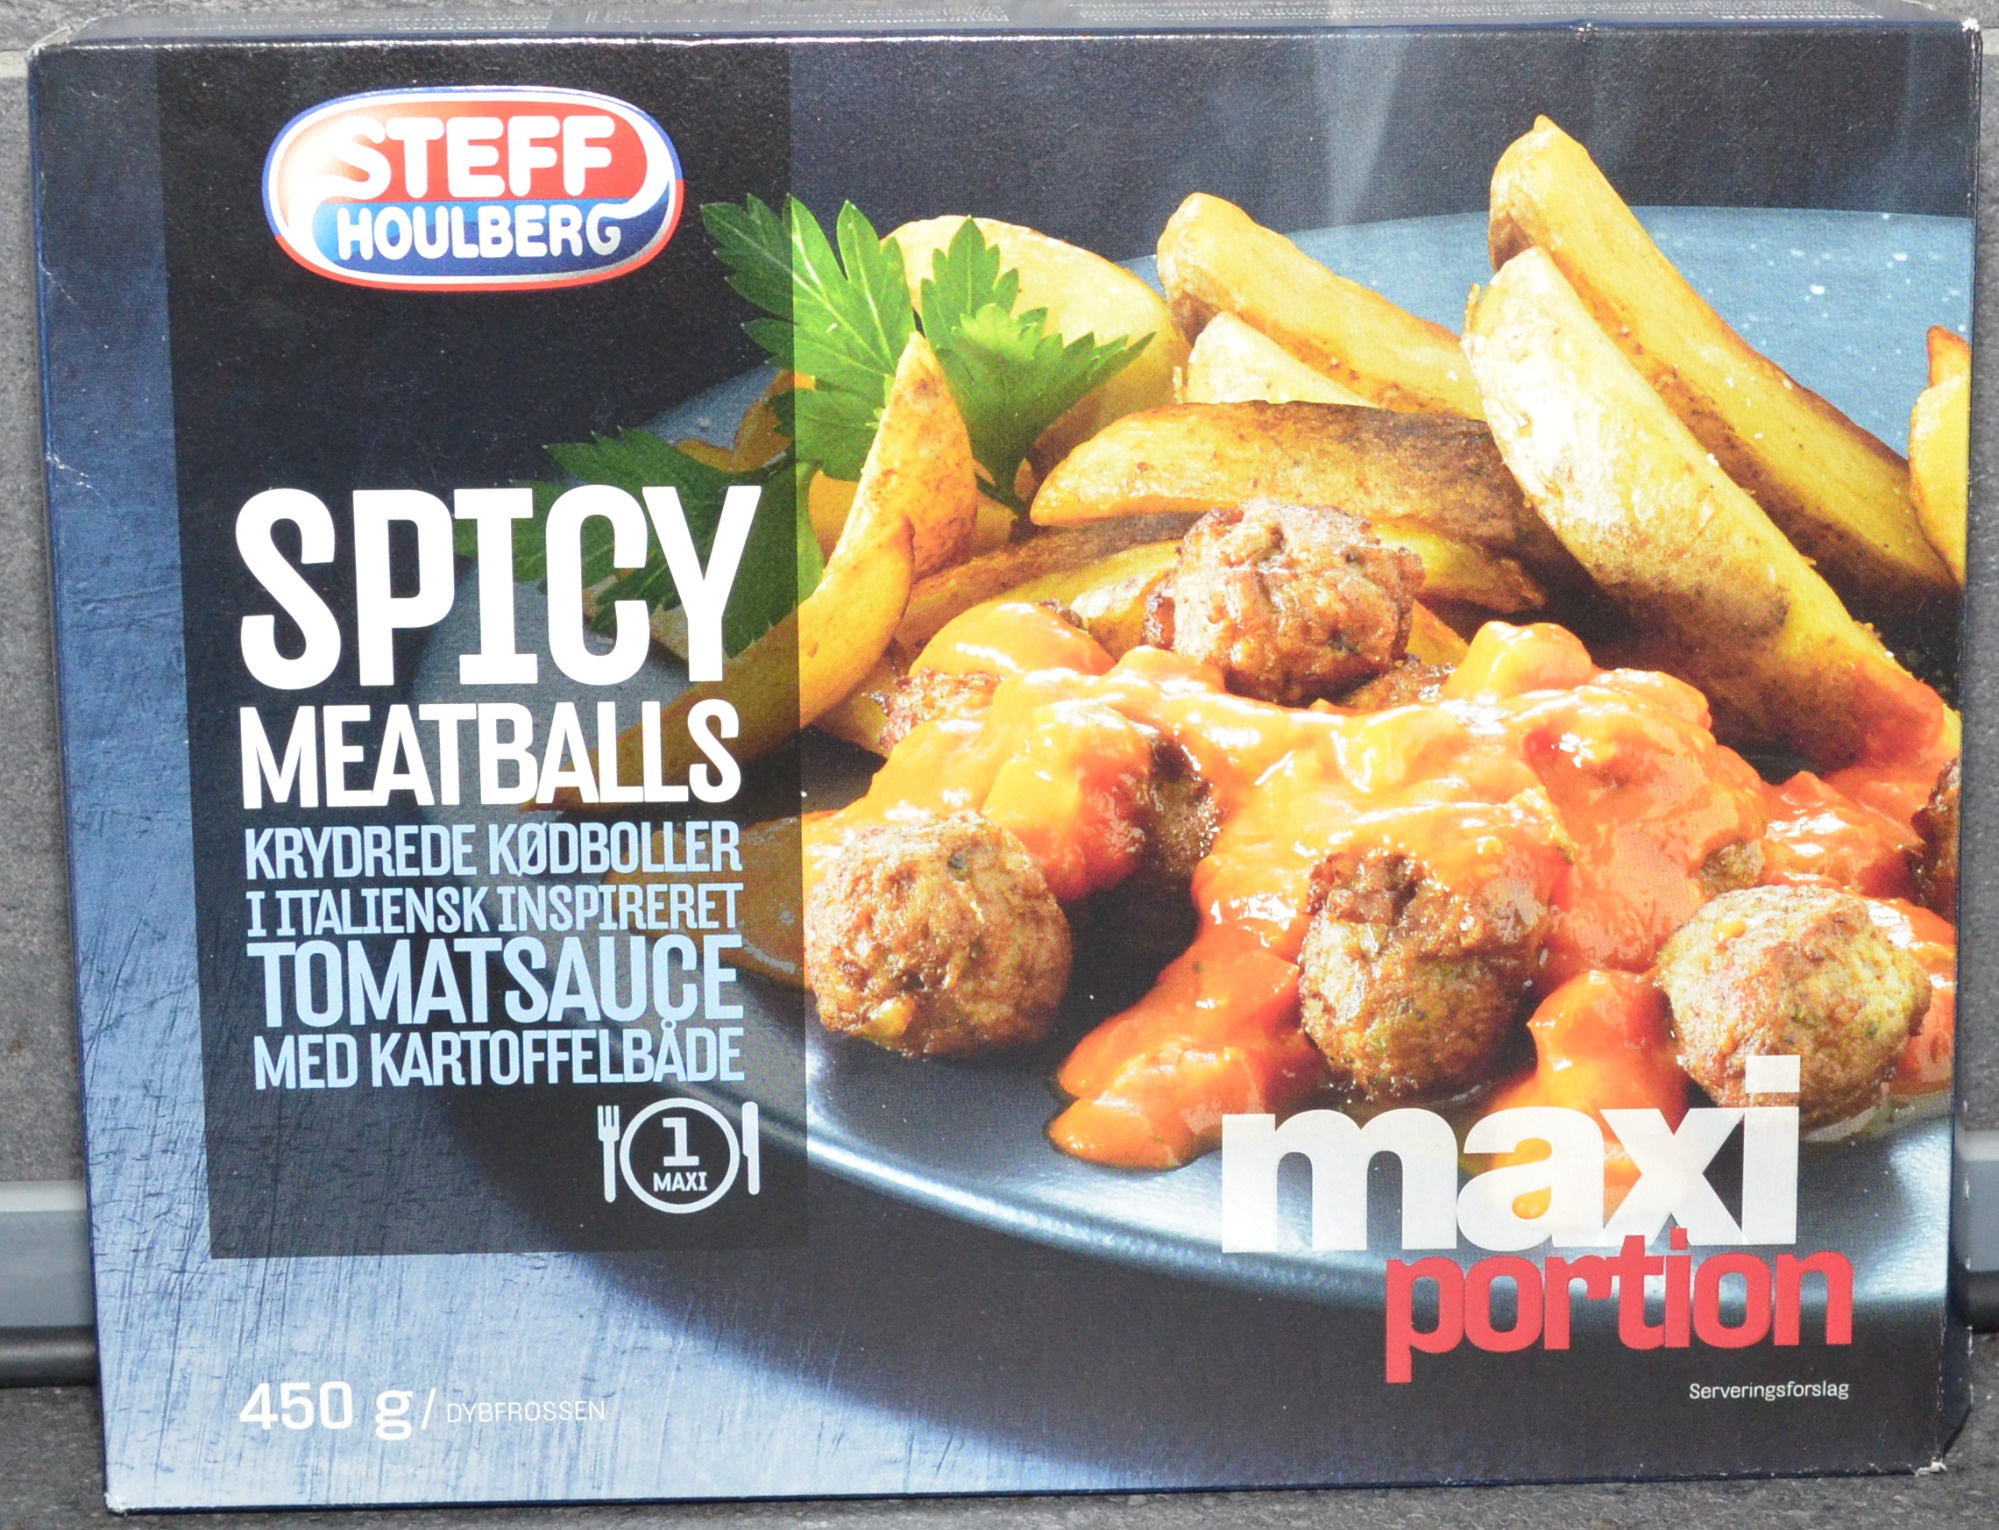 Spicy meatballs krydrede kødboller i italiensk inspireret tomatsauce med kartoffelbåde - Produkt - en